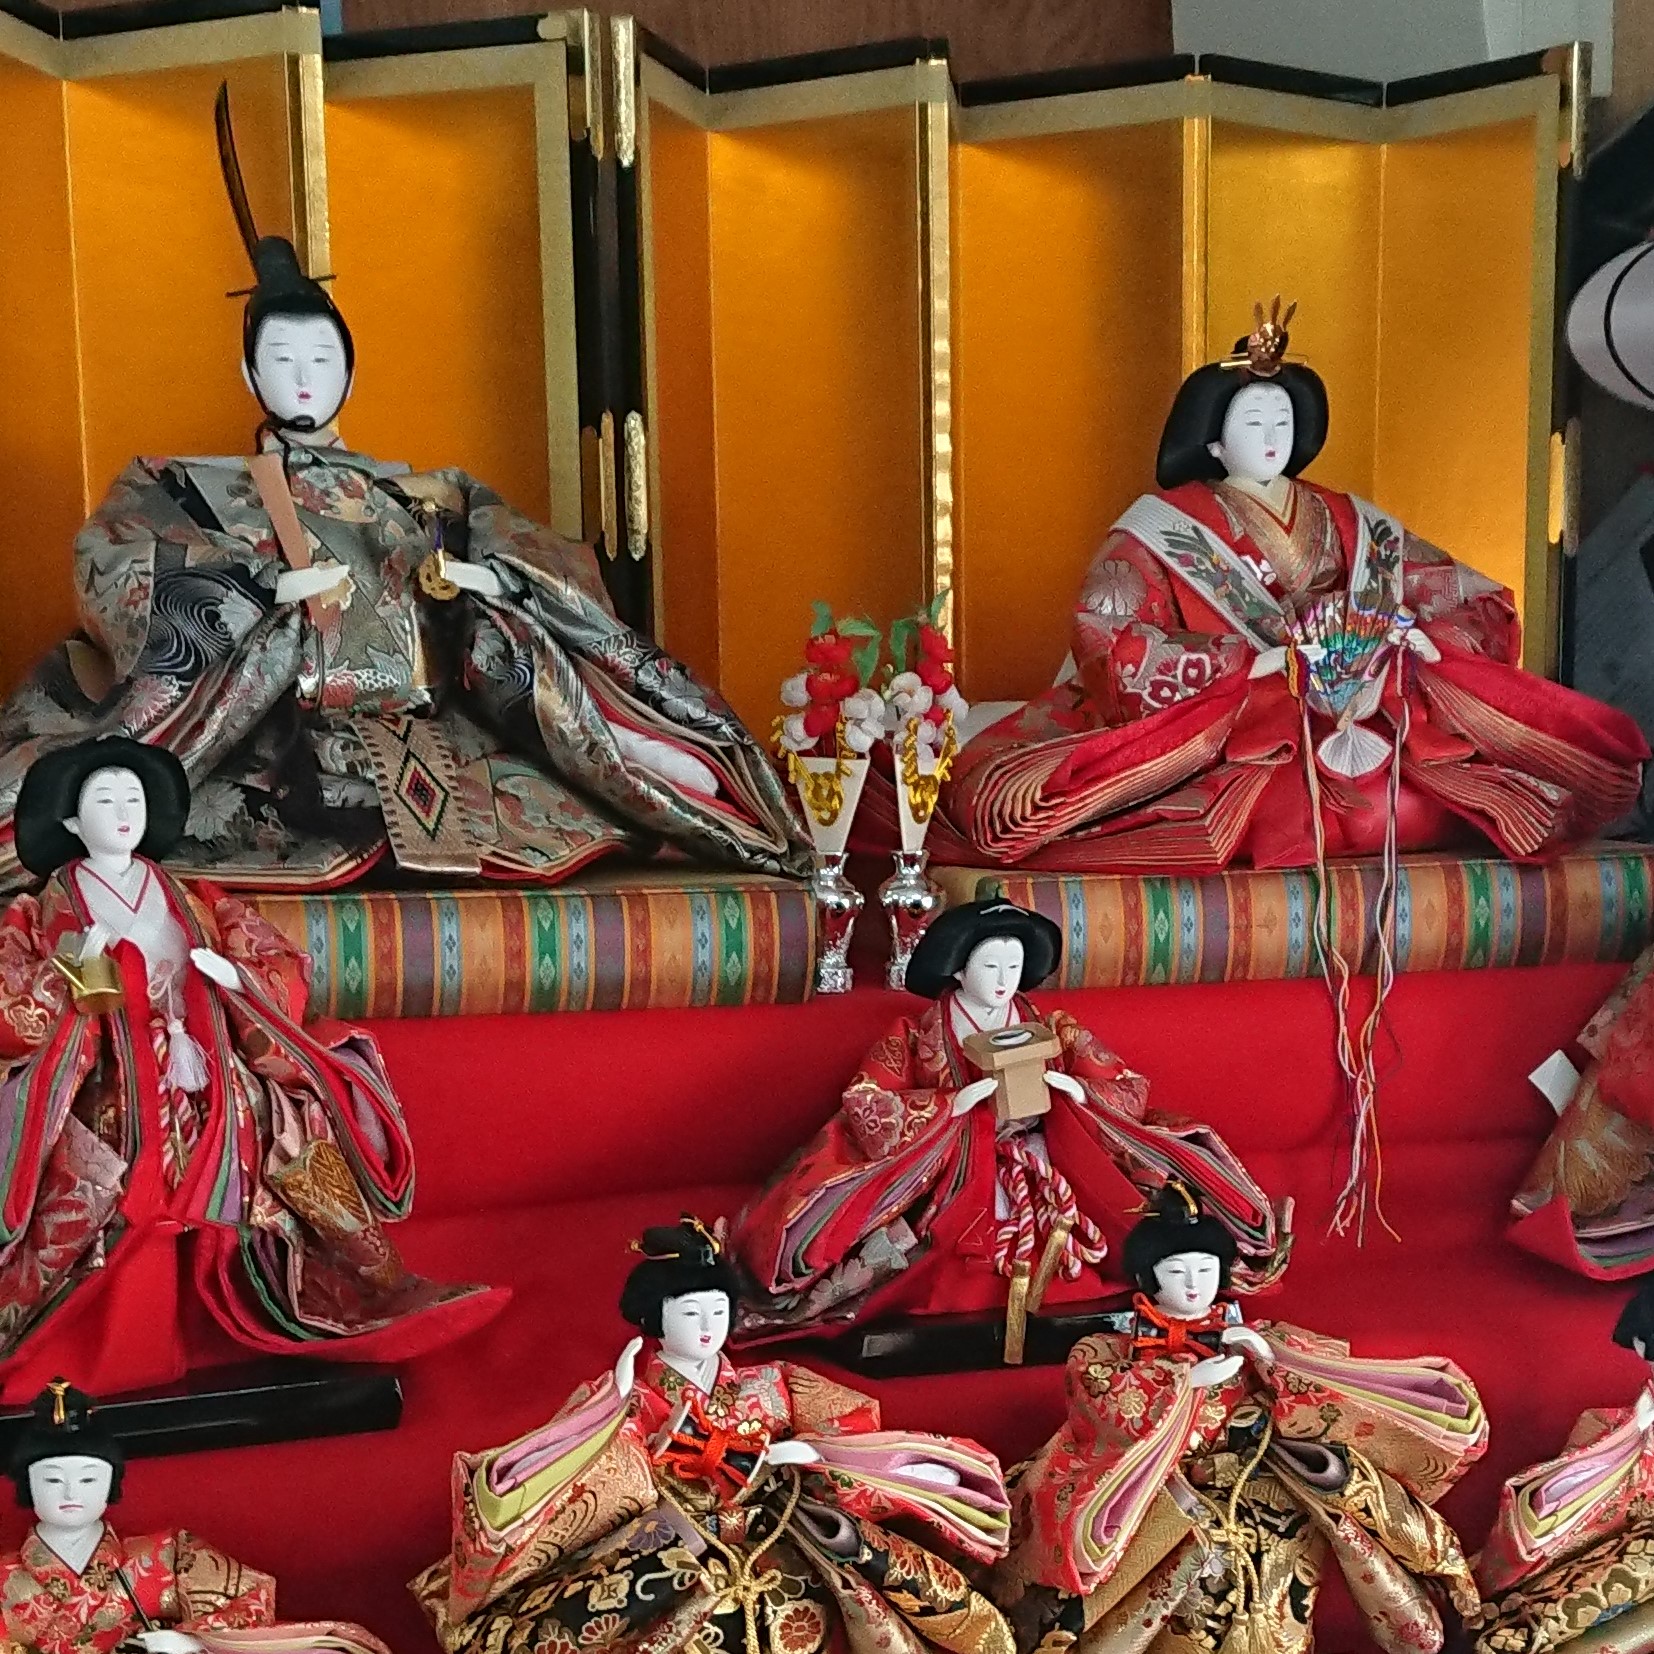 【会員情報】中田町生産物直売所「ひな人形の段飾り」